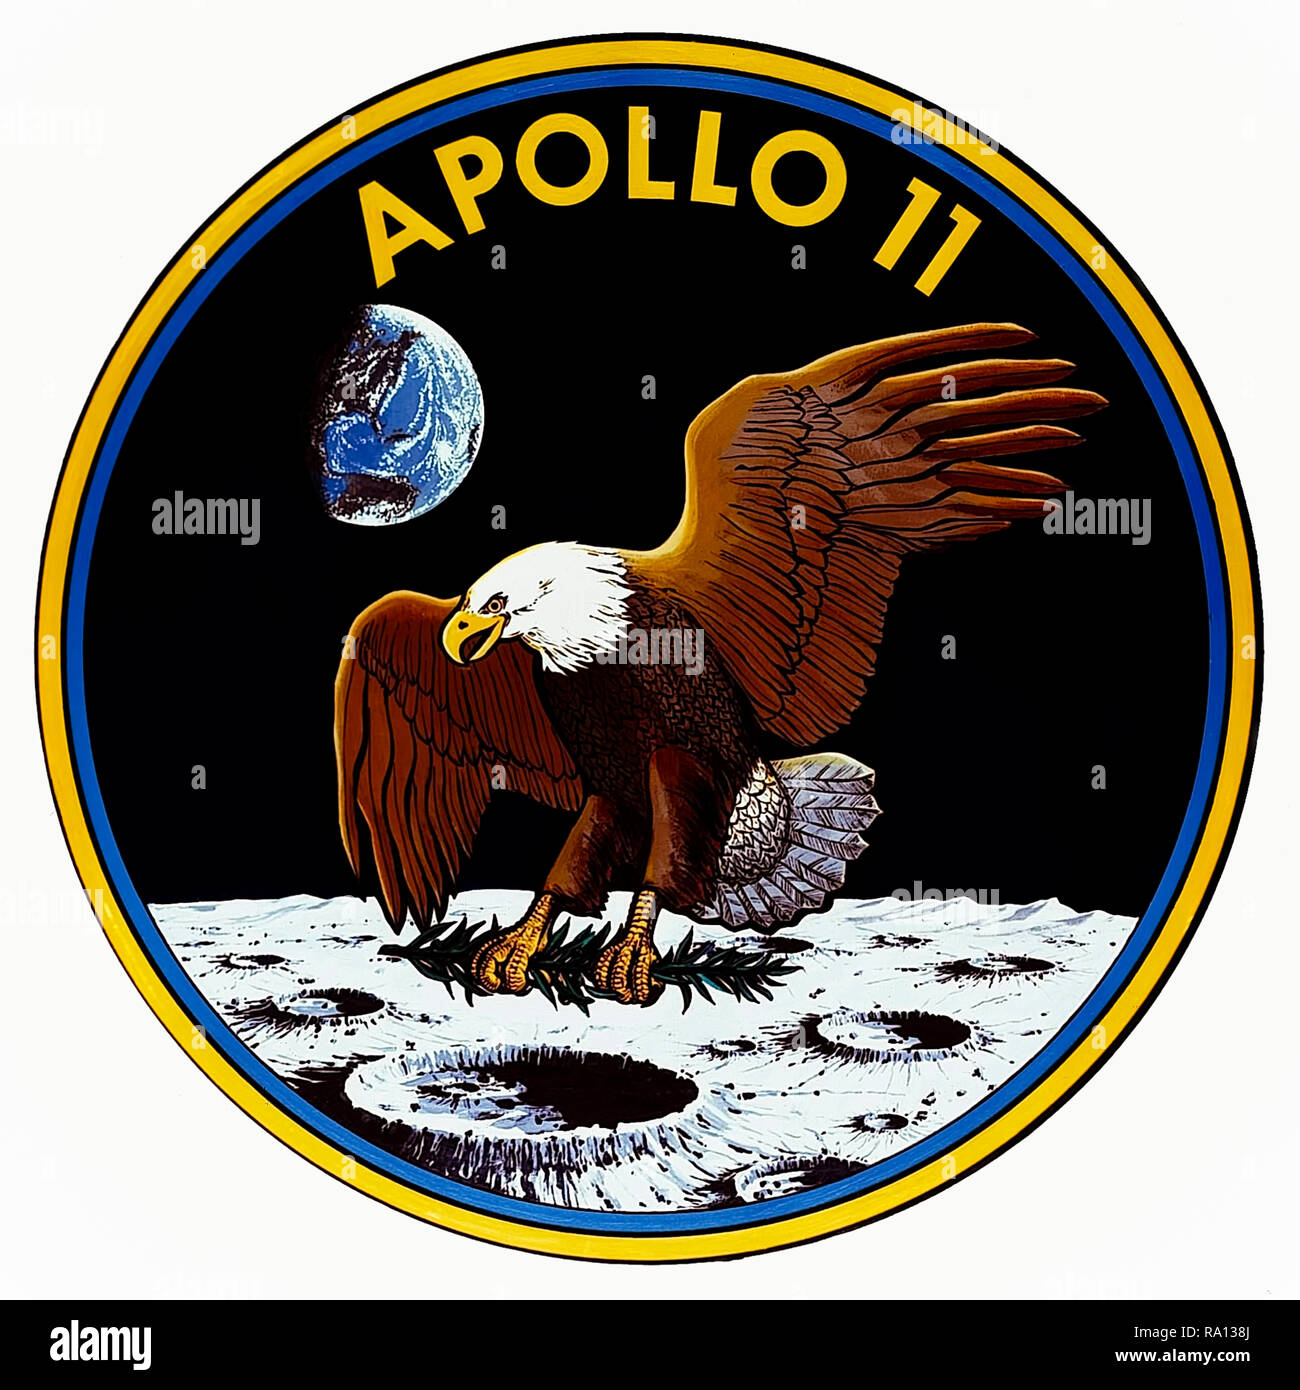 Parche de la misión Apolo 11 de 1969 con el águila calva americana ofreciendo una rama de olivo a la superficie lunar como un símbolo pacífico de la expedición. El emblema fue diseñado en colaboración será la entrada de los astronautas Neil Armstrong, Buzz Aldrin y Michael Collins. Foto de stock